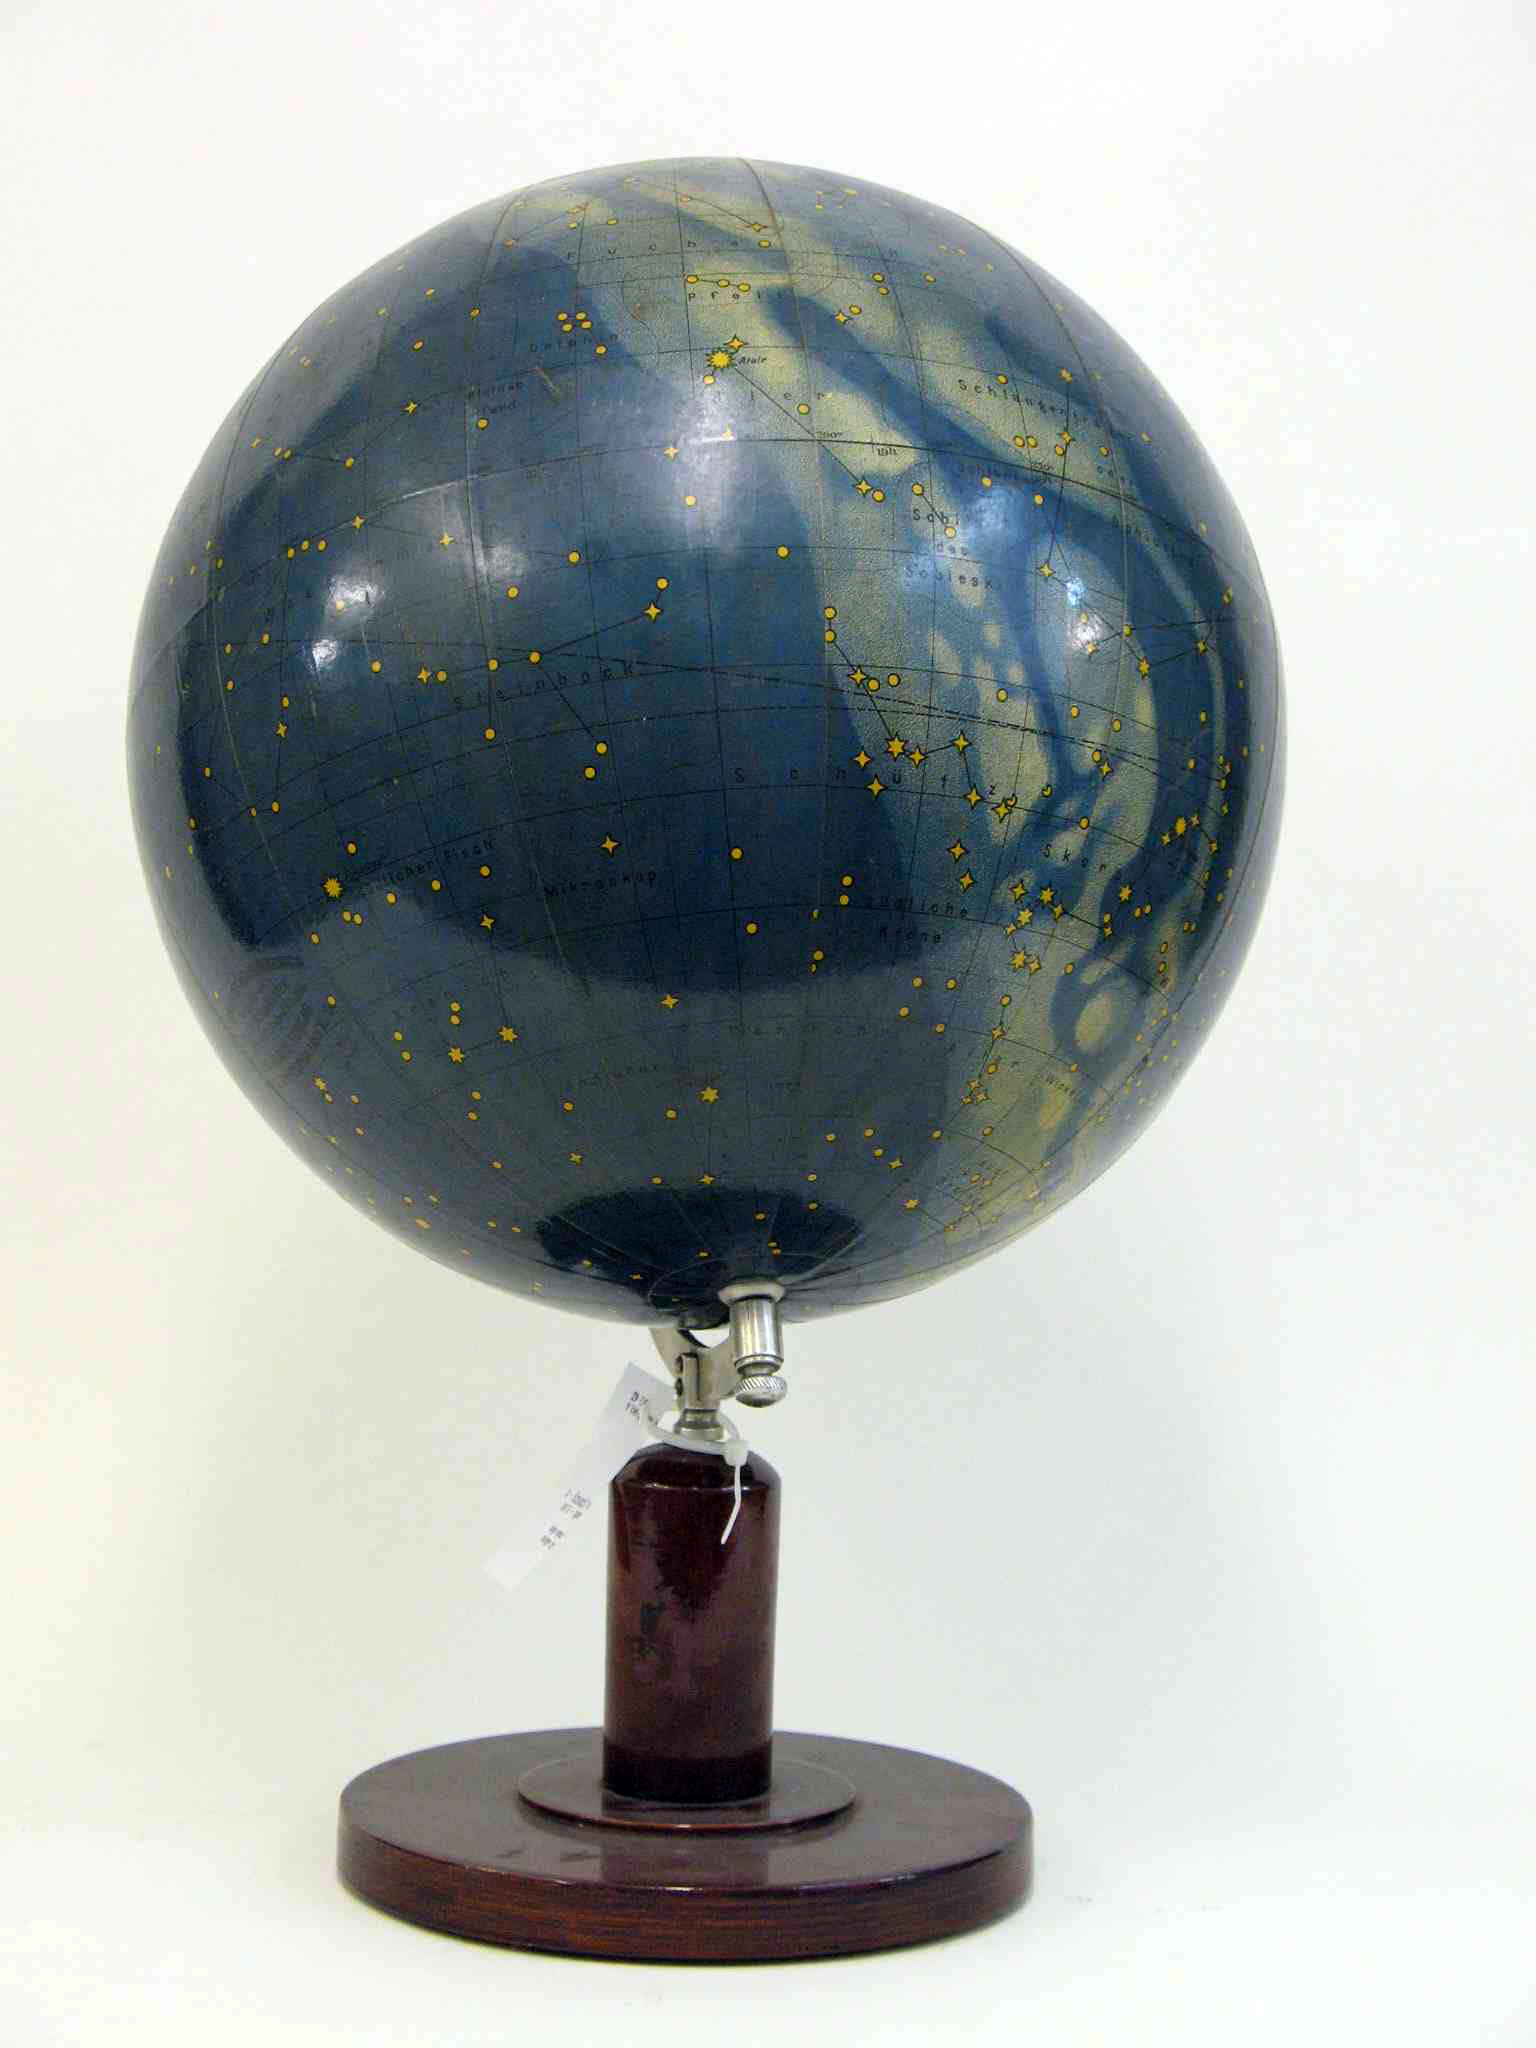 Himmelsglobus, celestial globe